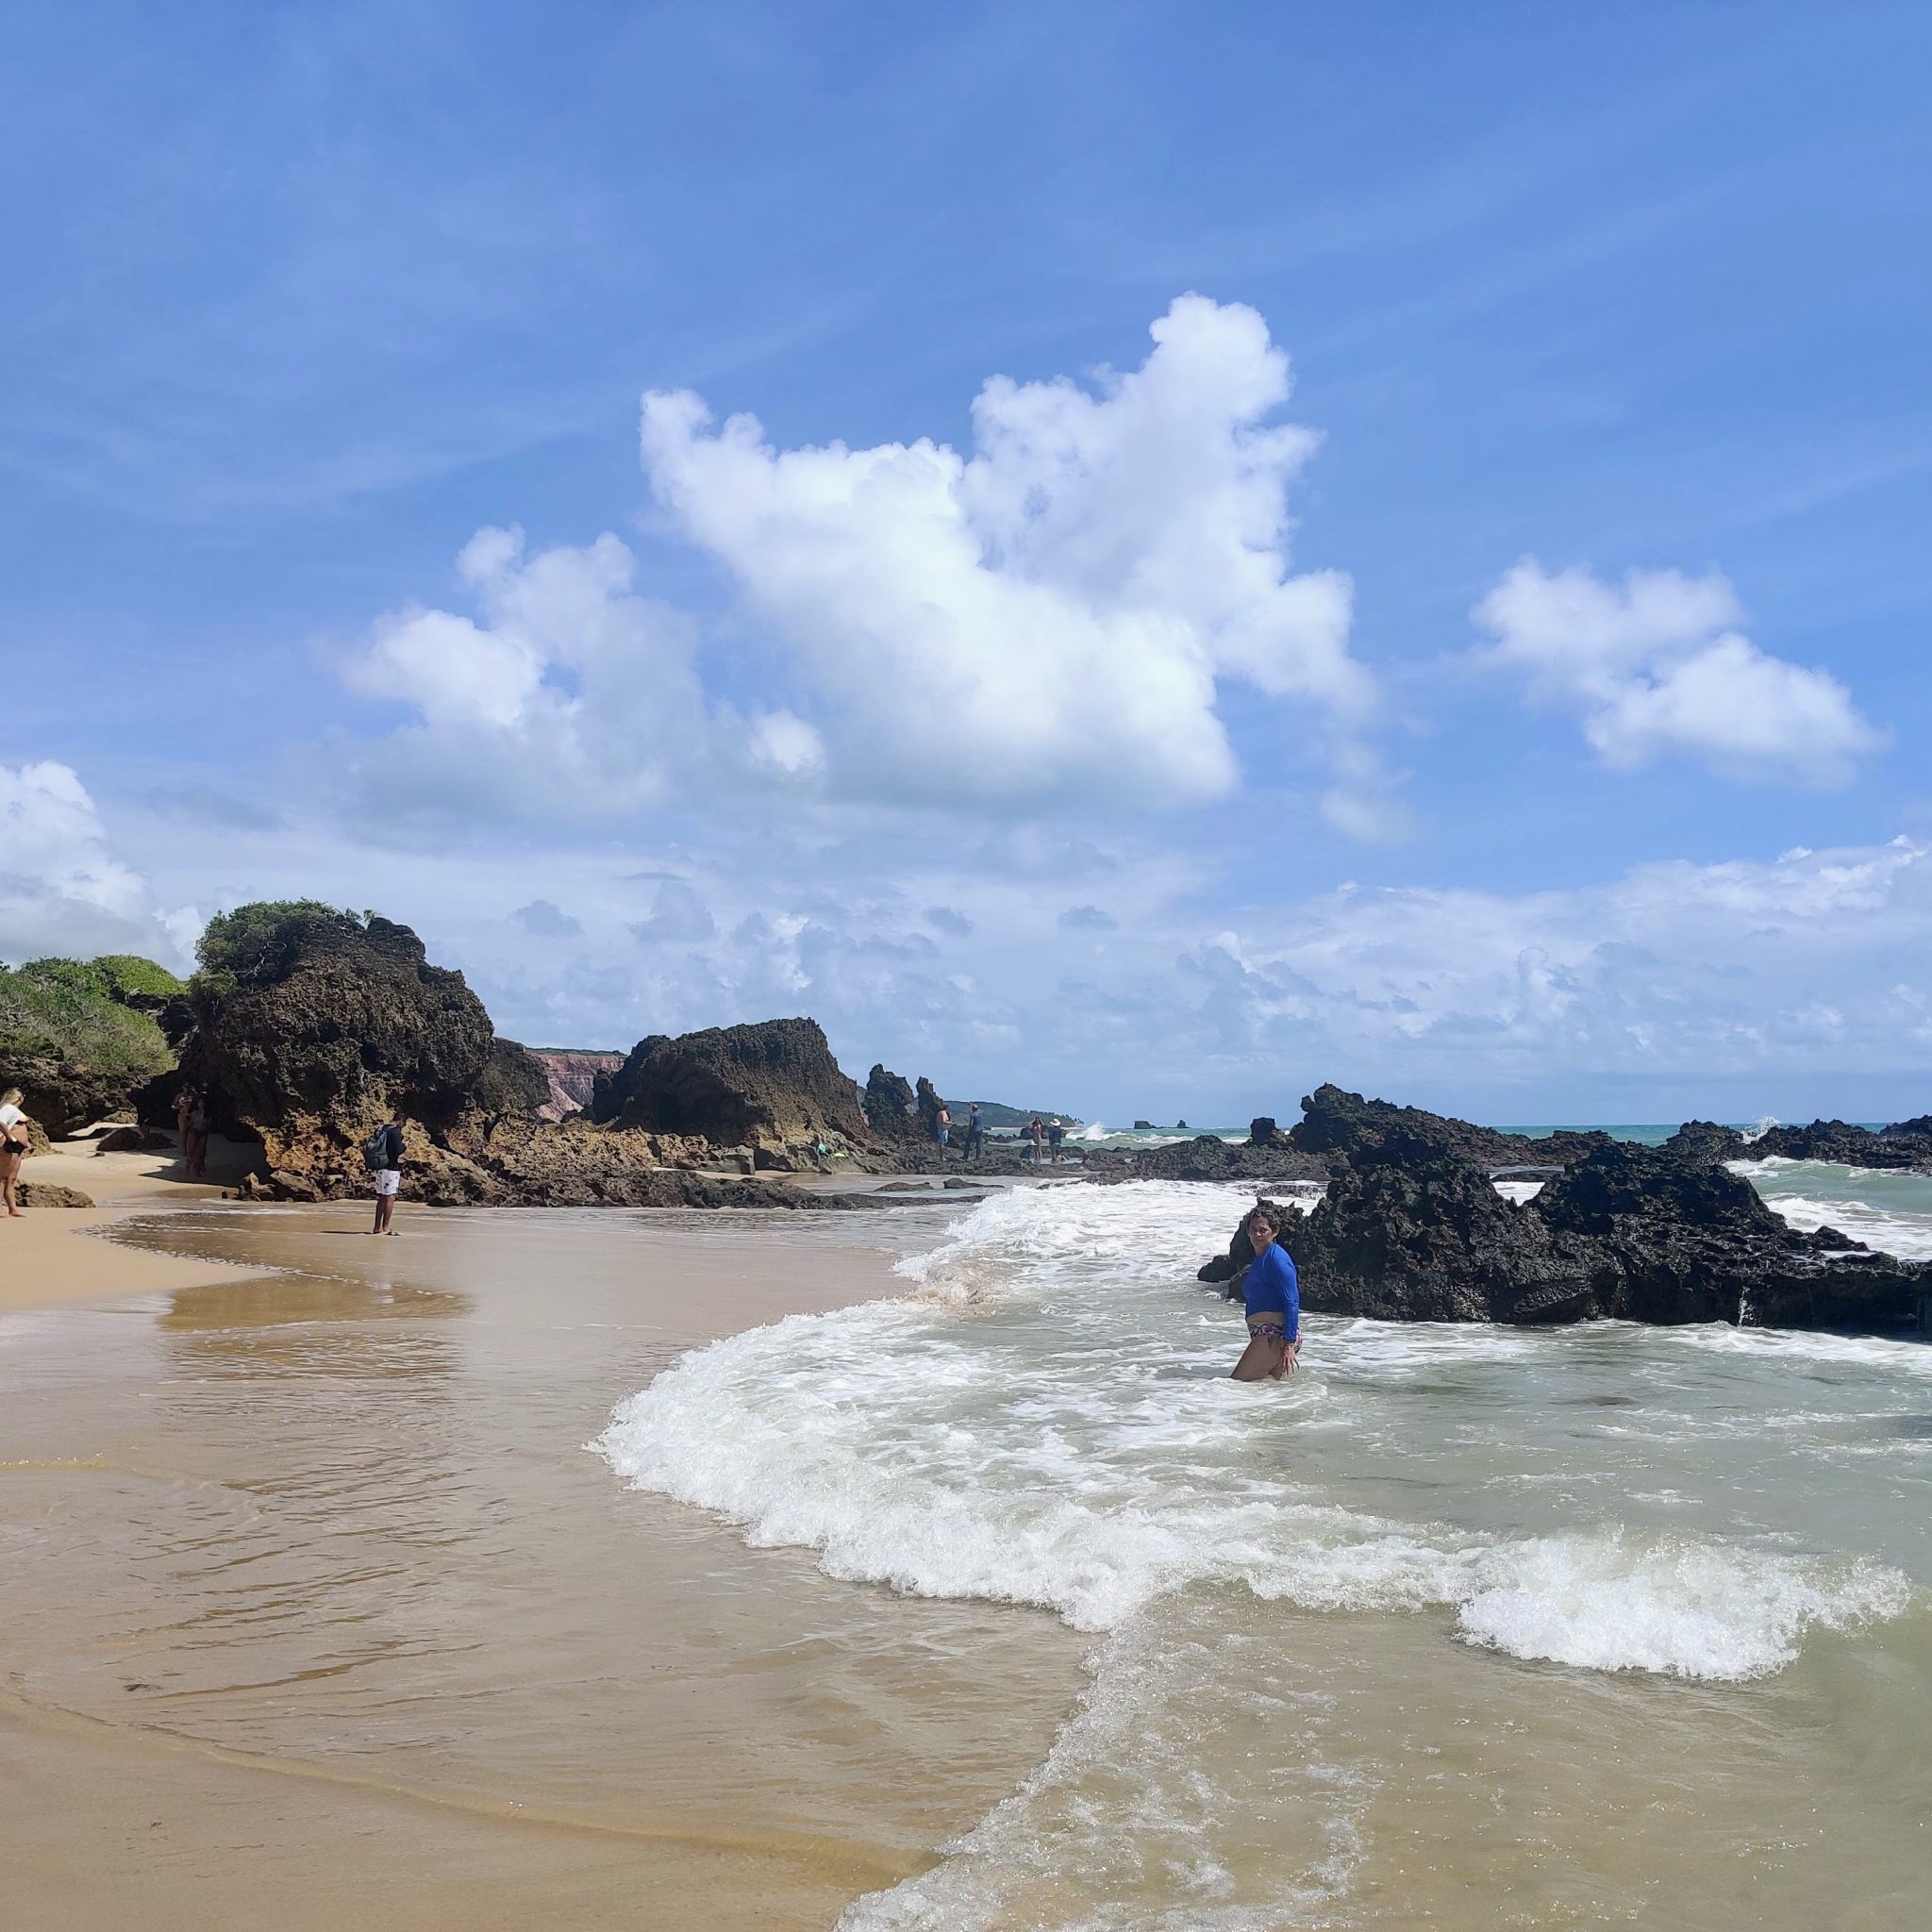 Melhores praias da Paraíba: a Praia de Tambaba, em Conde (PB), é bonita demais com as suas formações rochosas. Porém, só entre na água quando a maré estiver baixa, OK? | Crédito: Bruna Dinardi